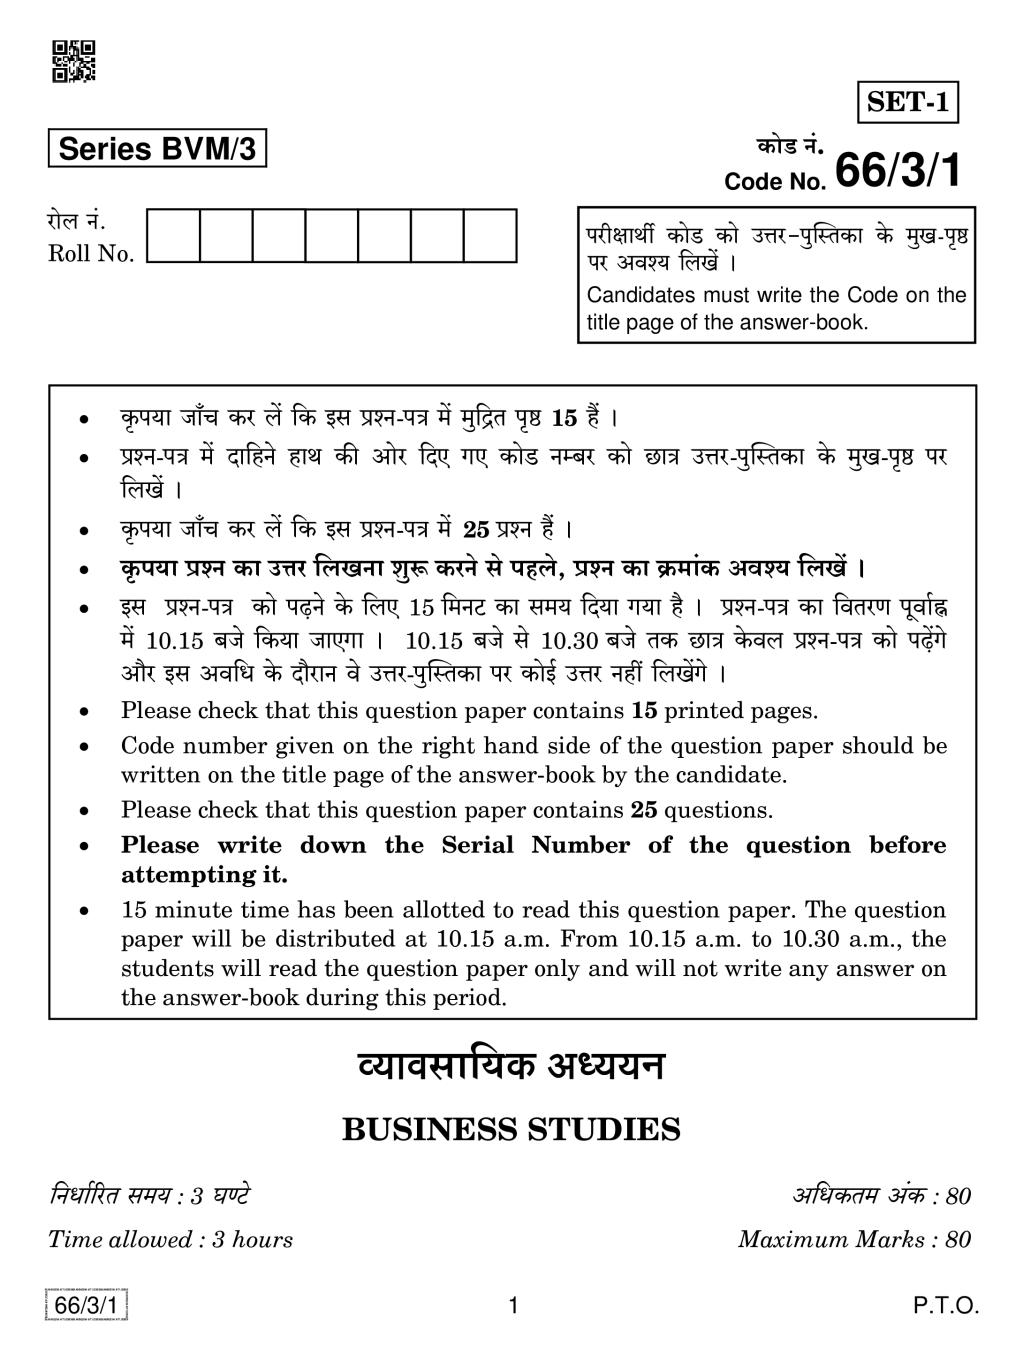 CBSE Class 12 Business Studies Question Paper 2019 Set 3 - Page 1